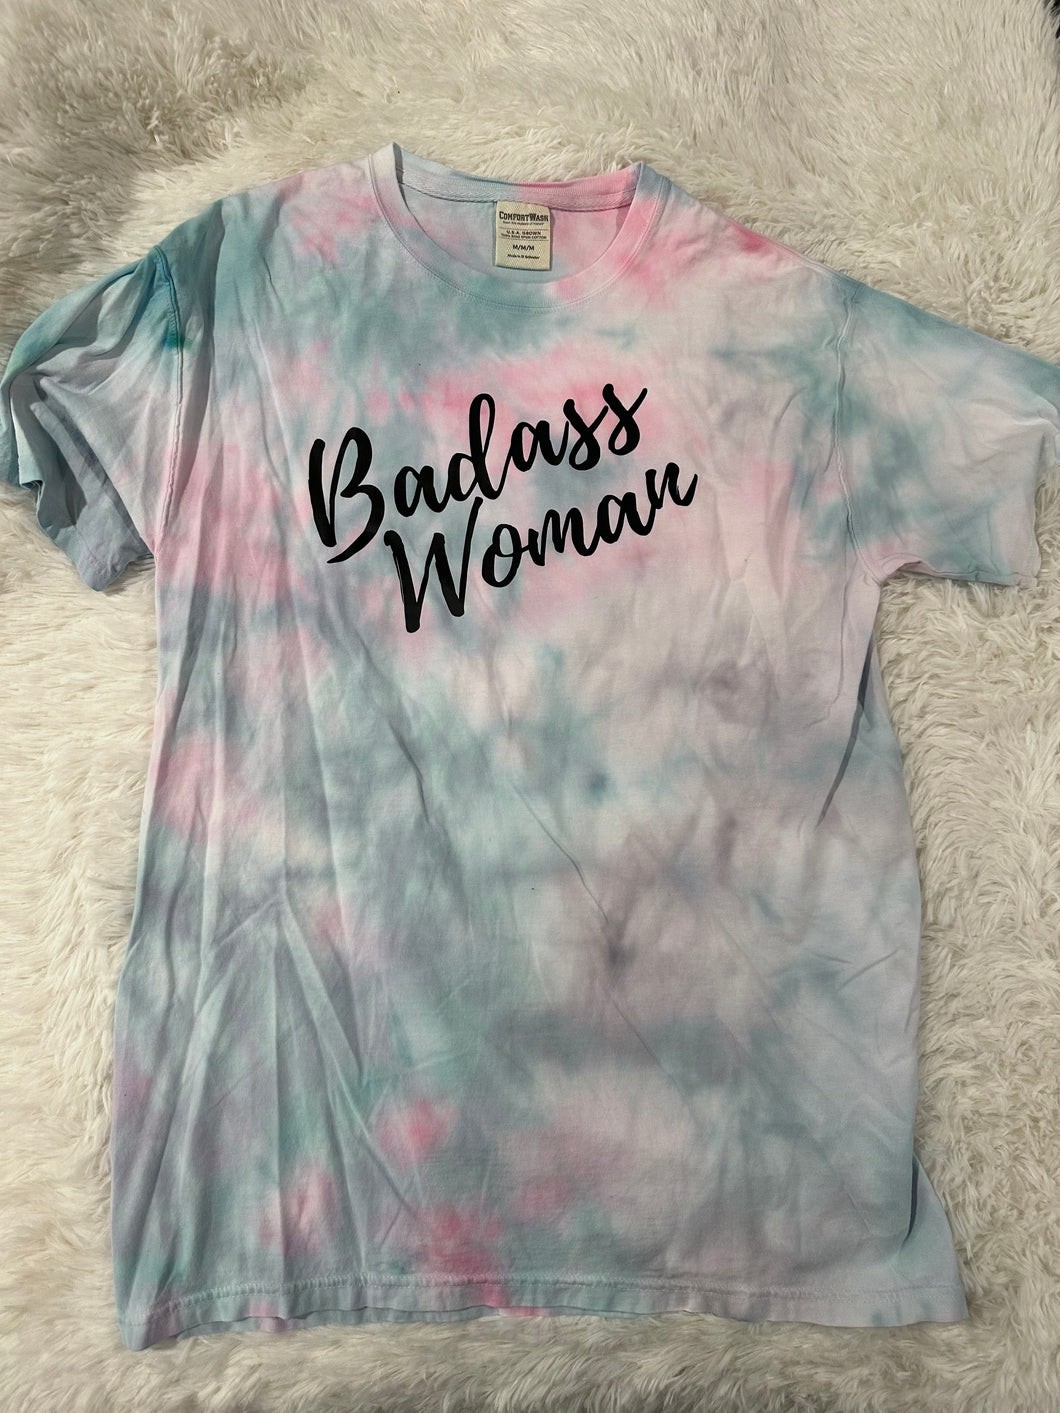 badass woman tie dye t-shirt - Medium